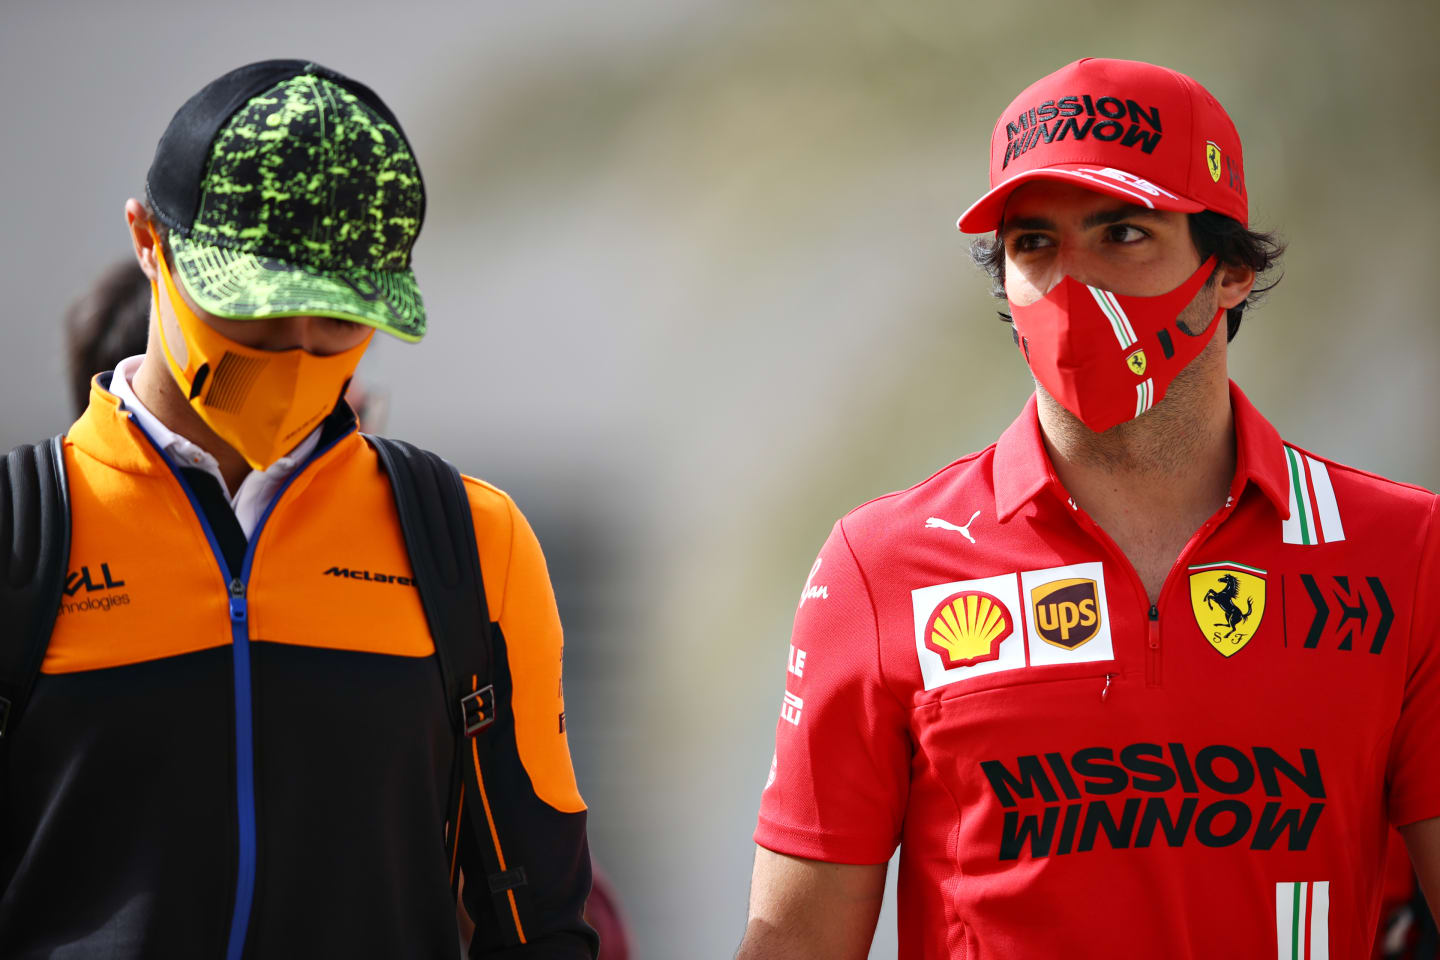 BAHRAIN, BAHRAIN - MARCH 13: Carlos Sainz of Spain and Ferrari (R) and Lando Norris of Great